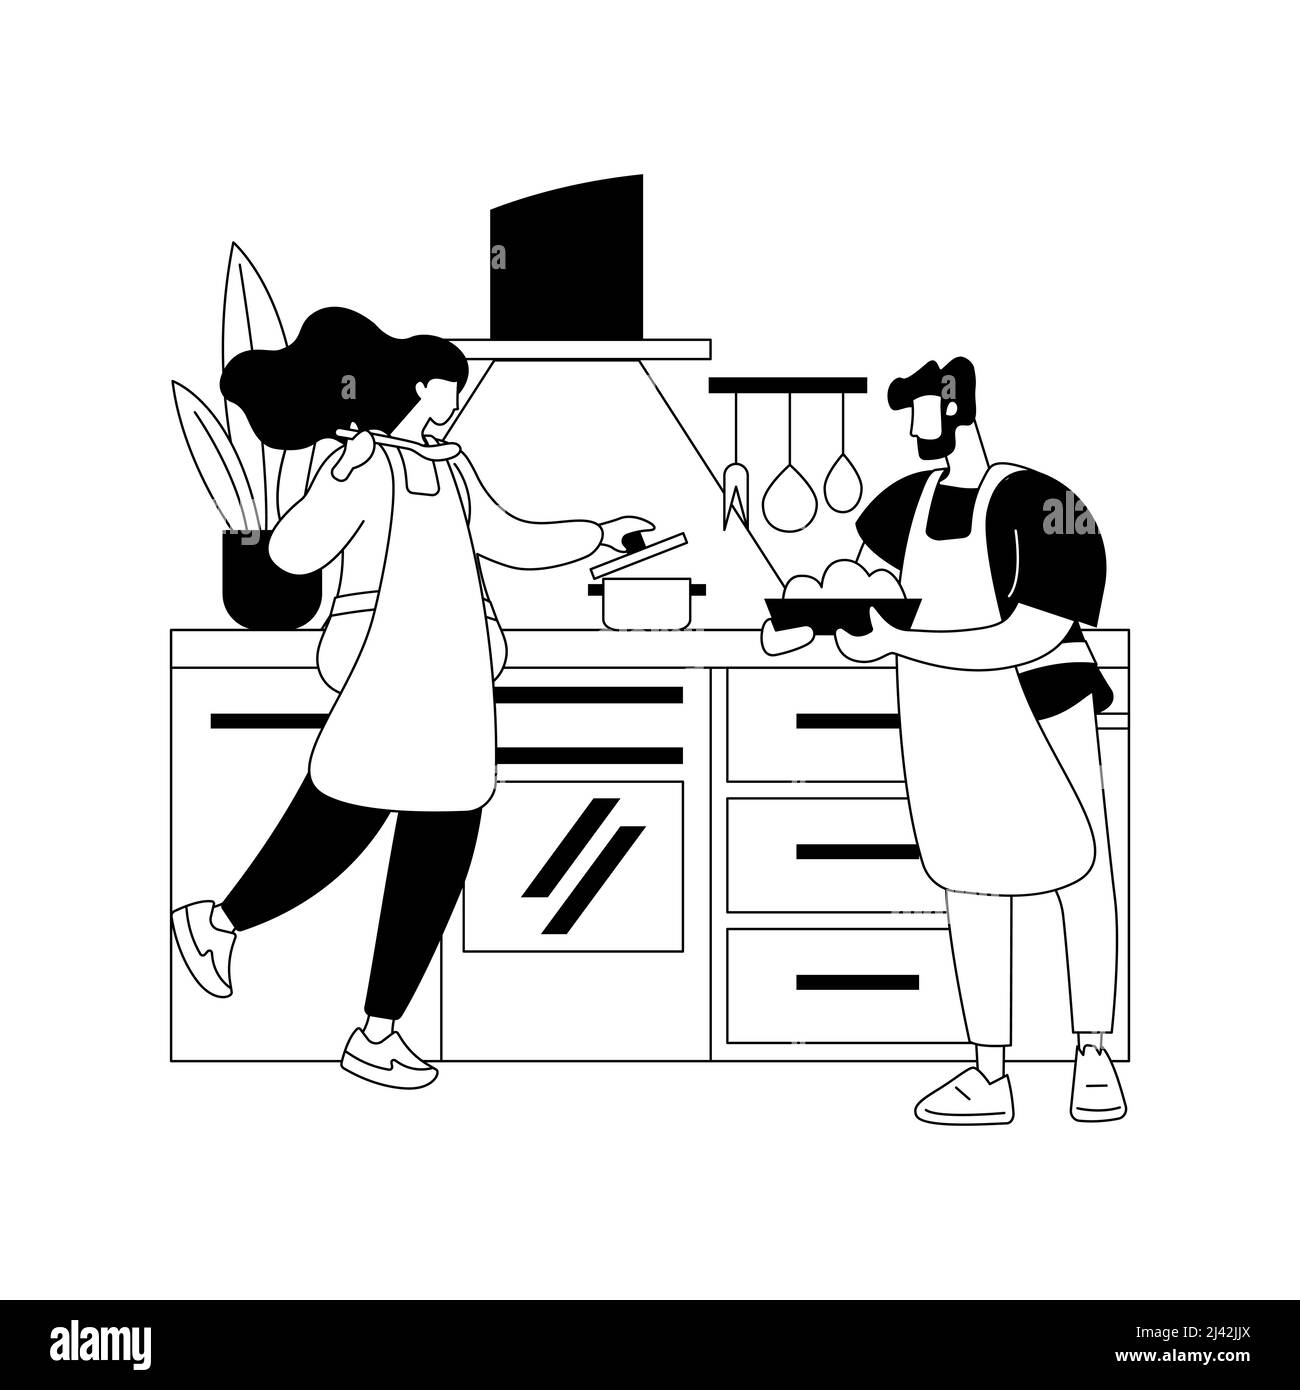 Home Cooking abstrakte Konzept Vektor-Illustration. Kochen zu Hause, Online-Rezepte für einfache Mahlzeiten, Familienaktivitäten, hausgemachte traditionelle Mahlzeit, Kochen TV Stock Vektor